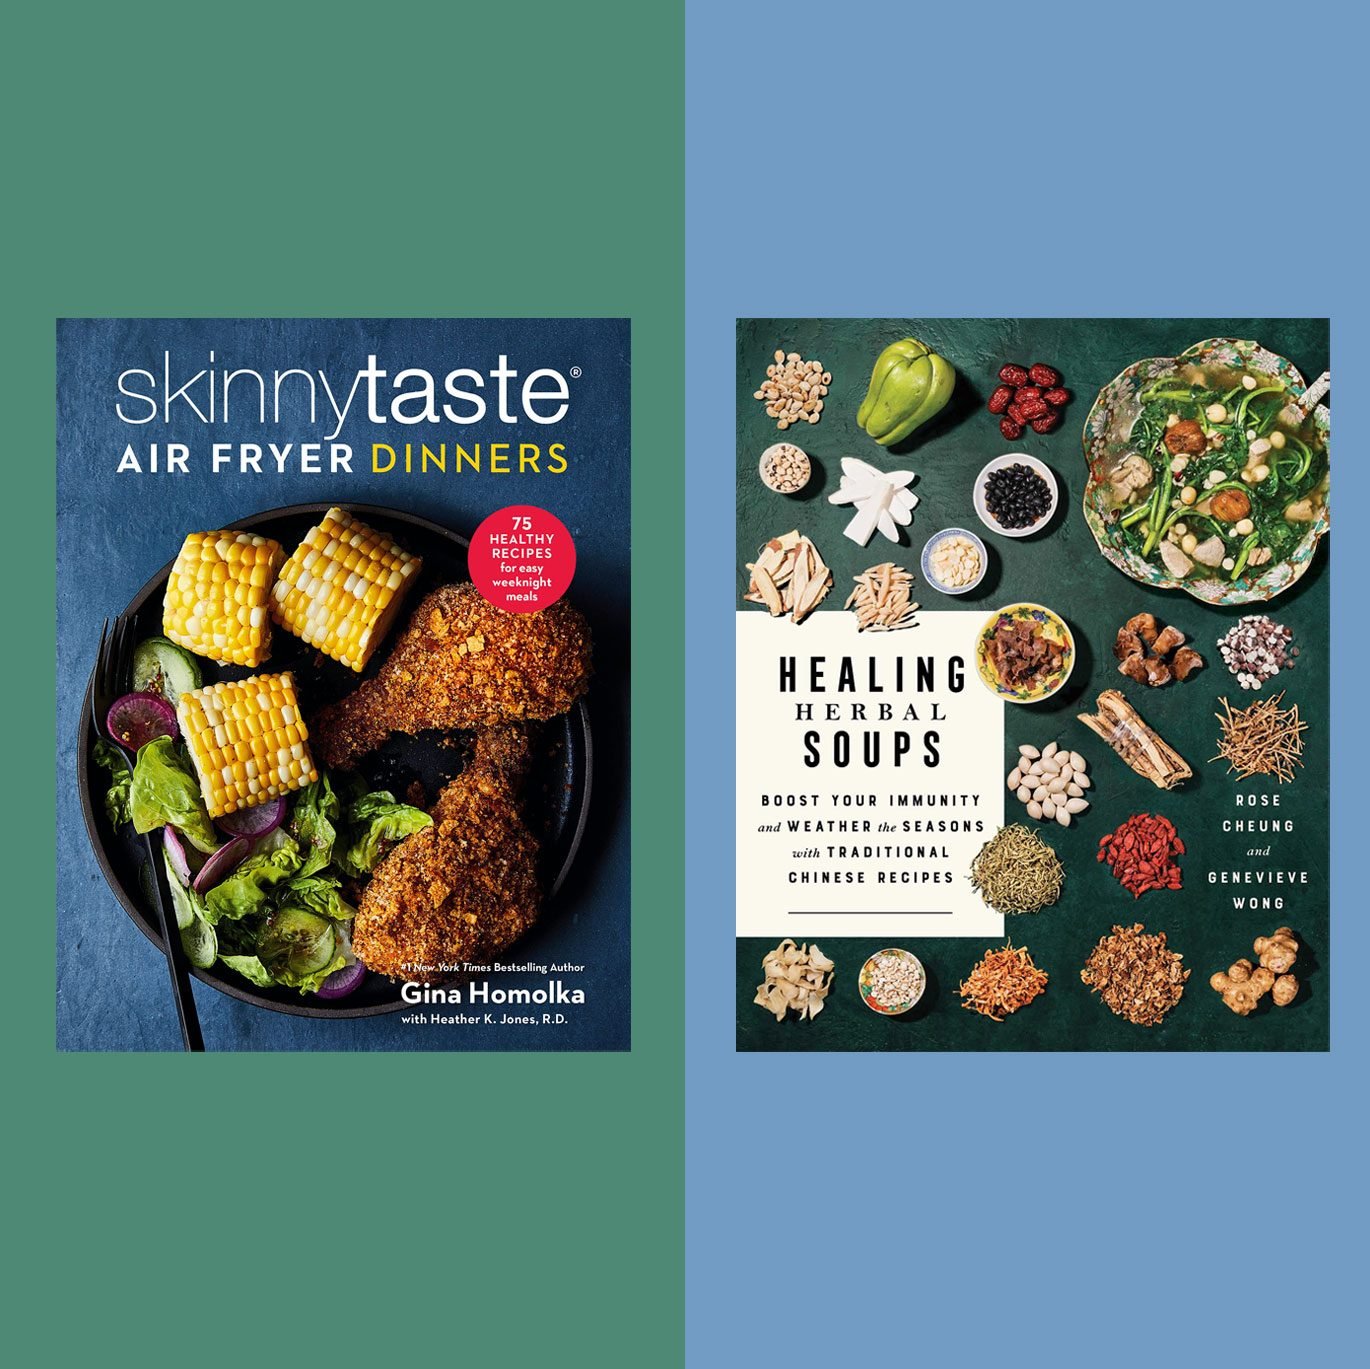 Skinnytaste Air Fryer Dinners Book, 1 each at Whole Foods Market